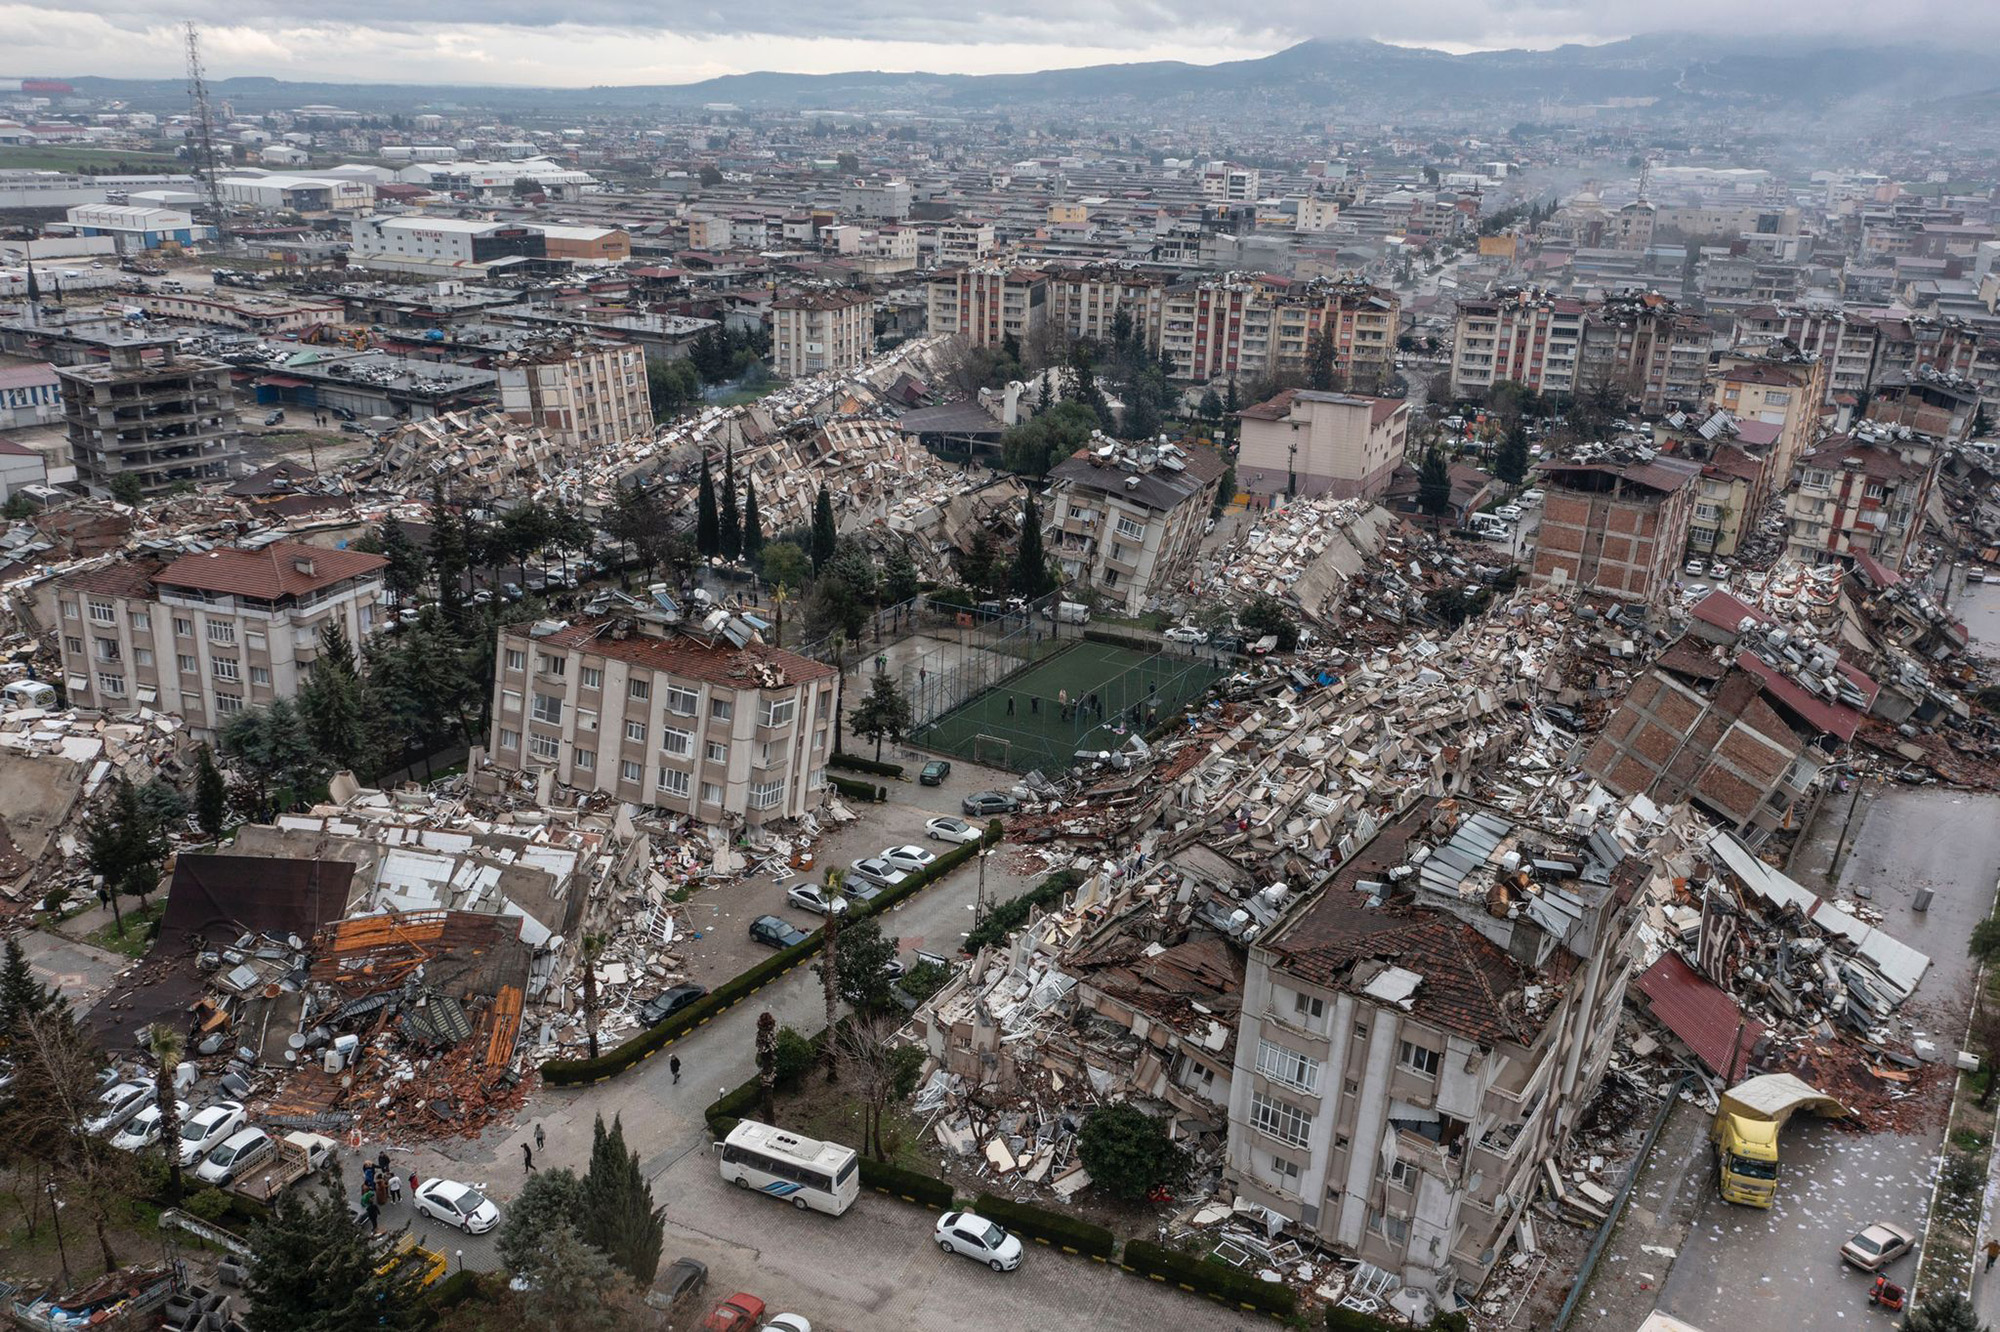 Nhà khoa học so sánh trận động đất ở Thổ Nhĩ Kỳ với 130 quả bom nguyên tử, hiện có hơn 1.500 người thiệt mạng - Ảnh 1.